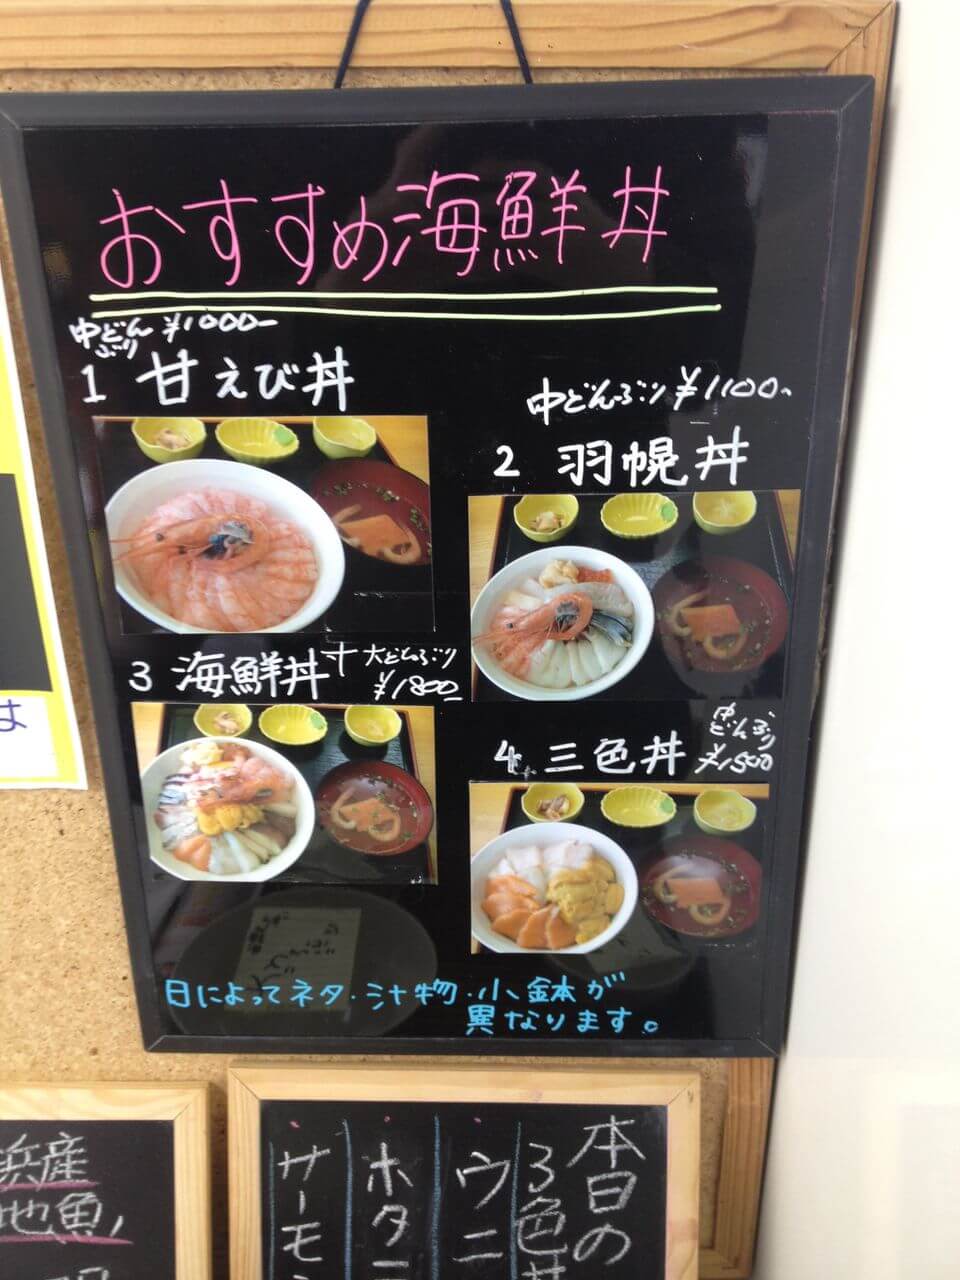 海鮮丼ランキングボード